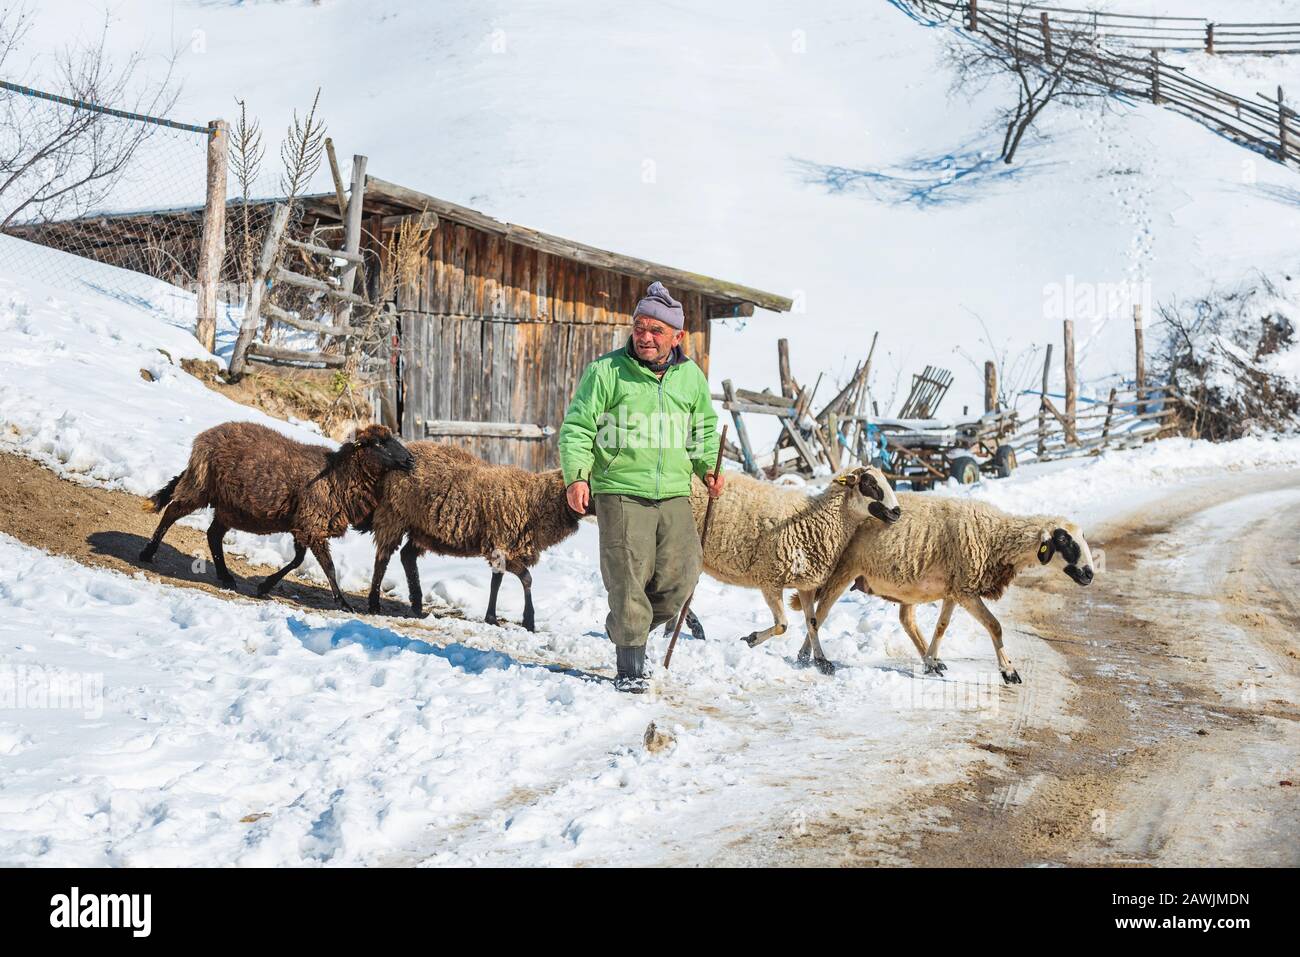 Village de Grachevo, Rhodopes, Bulgarie - 8 février 2020: Vieux Berger avec troupeau de moutons dans les montagnes d'hiver. Banque D'Images